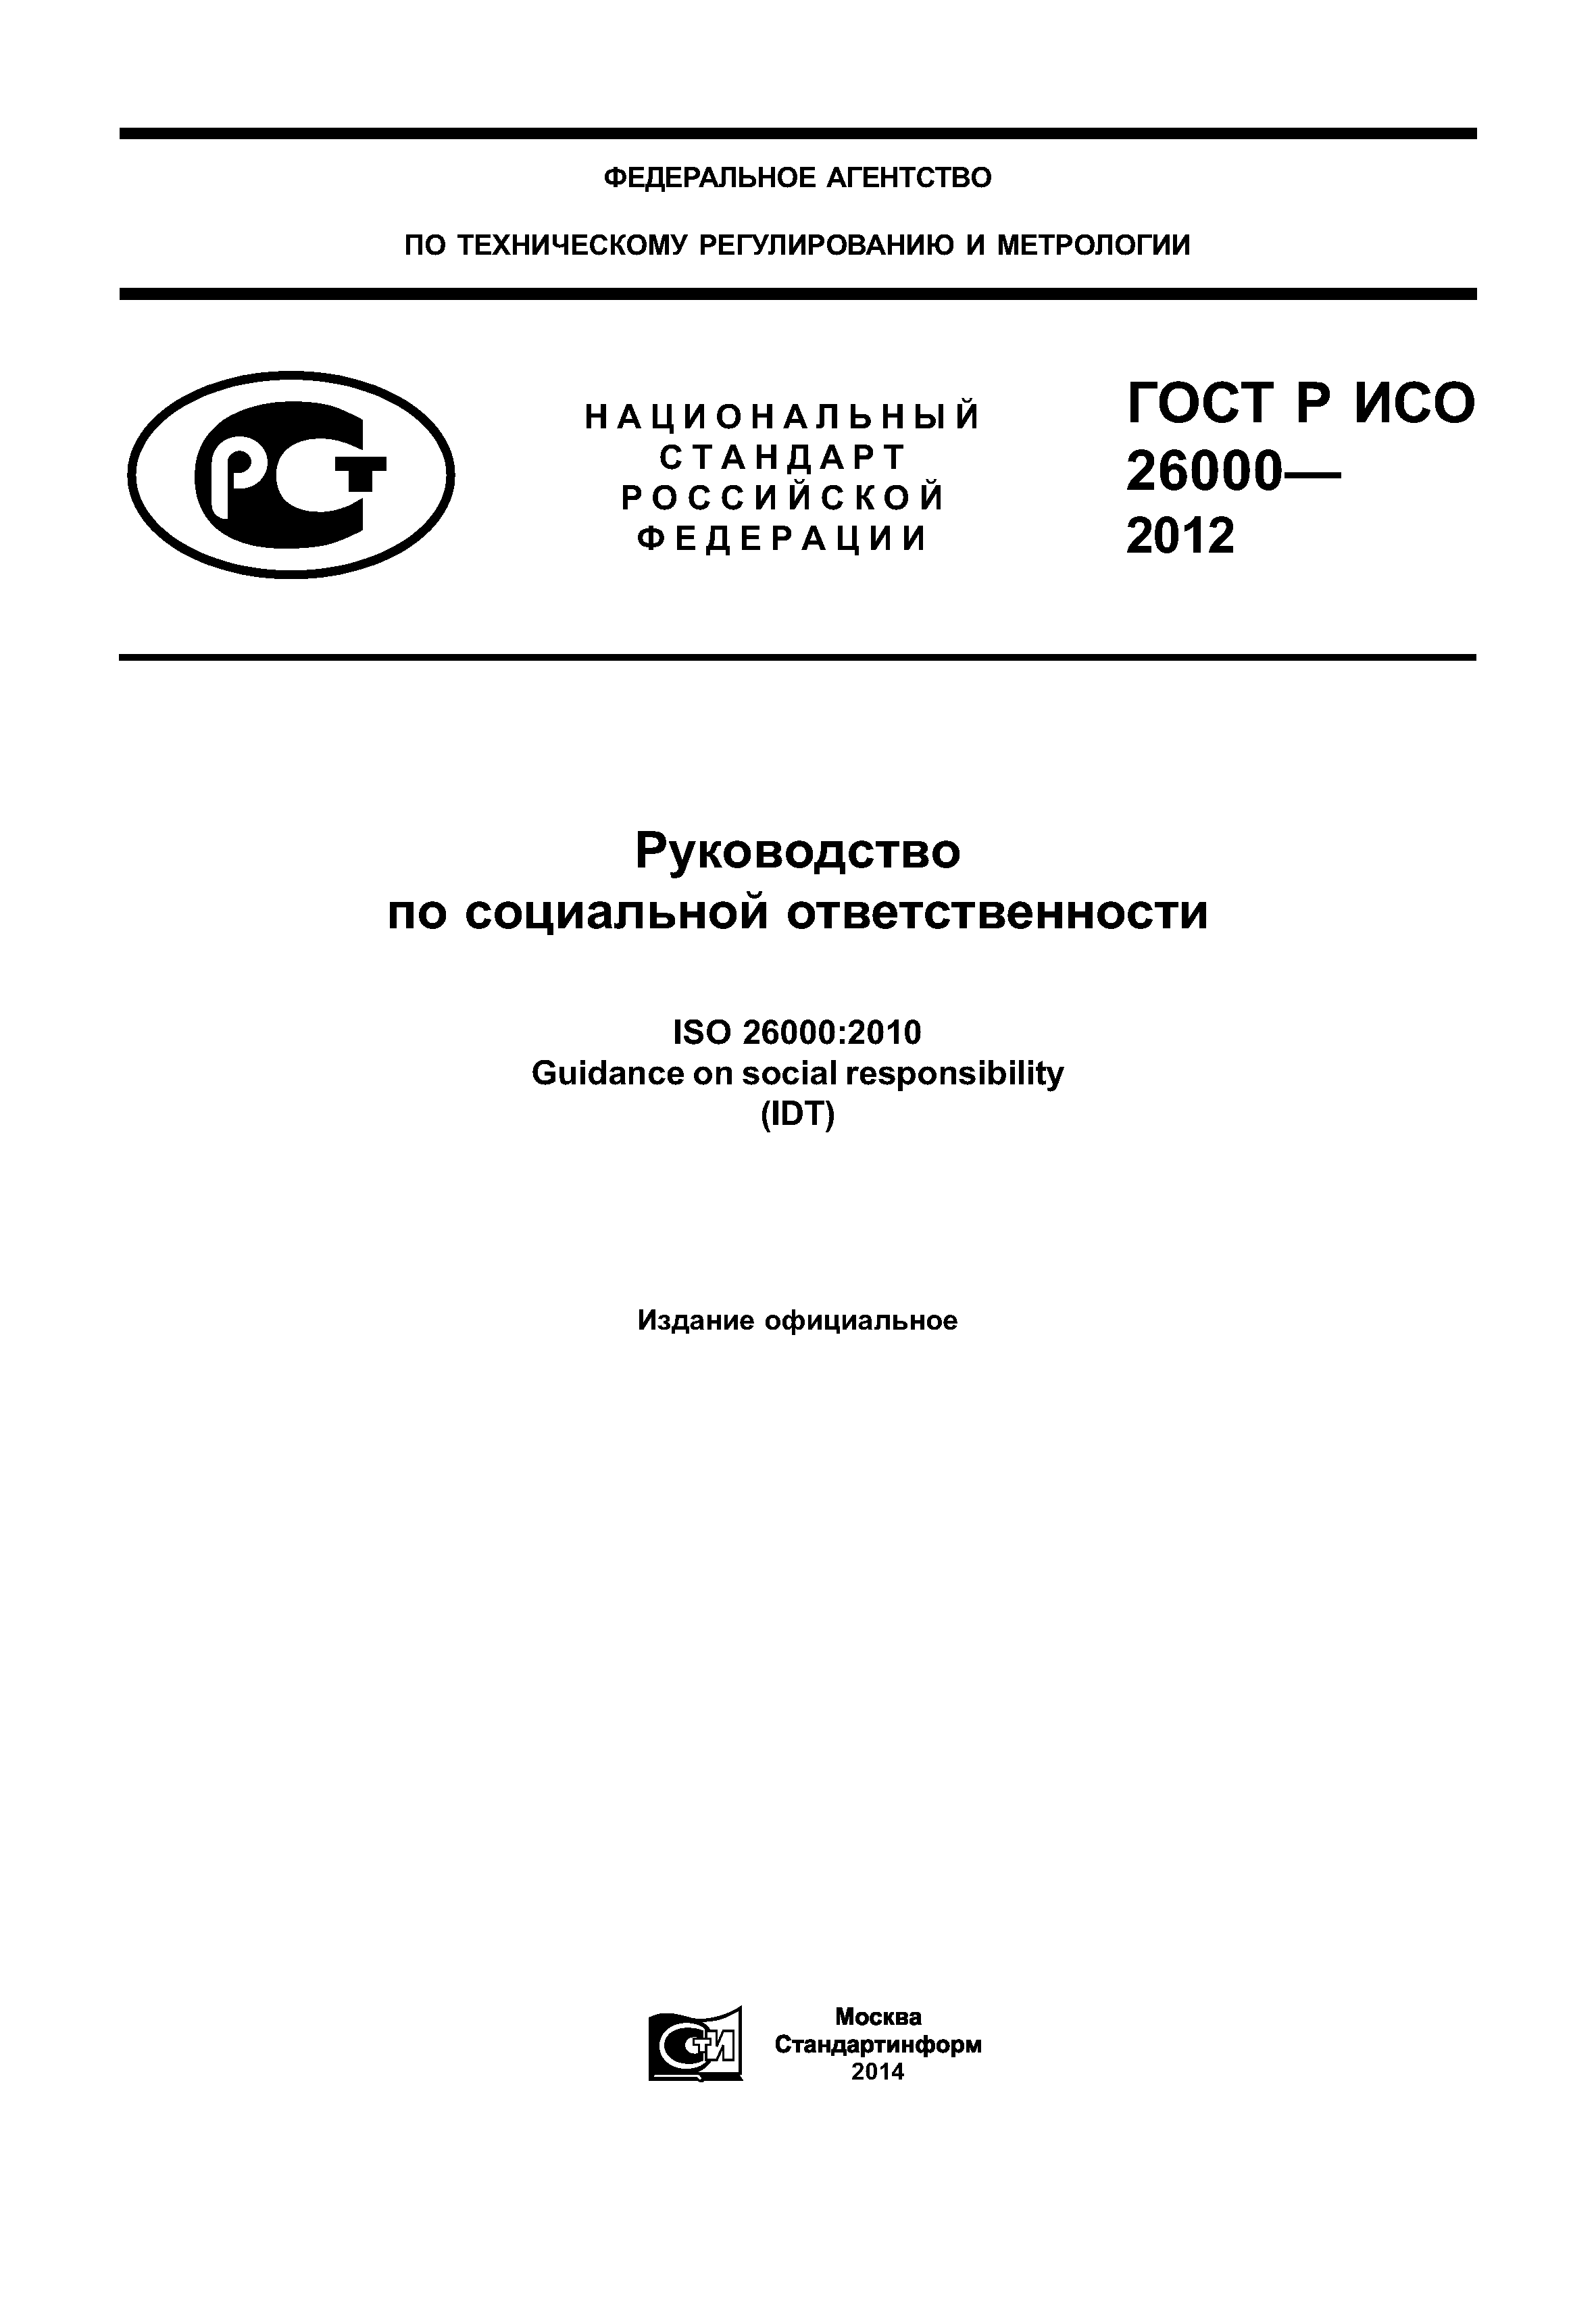 ГОСТ Р ИСО 26000-2012